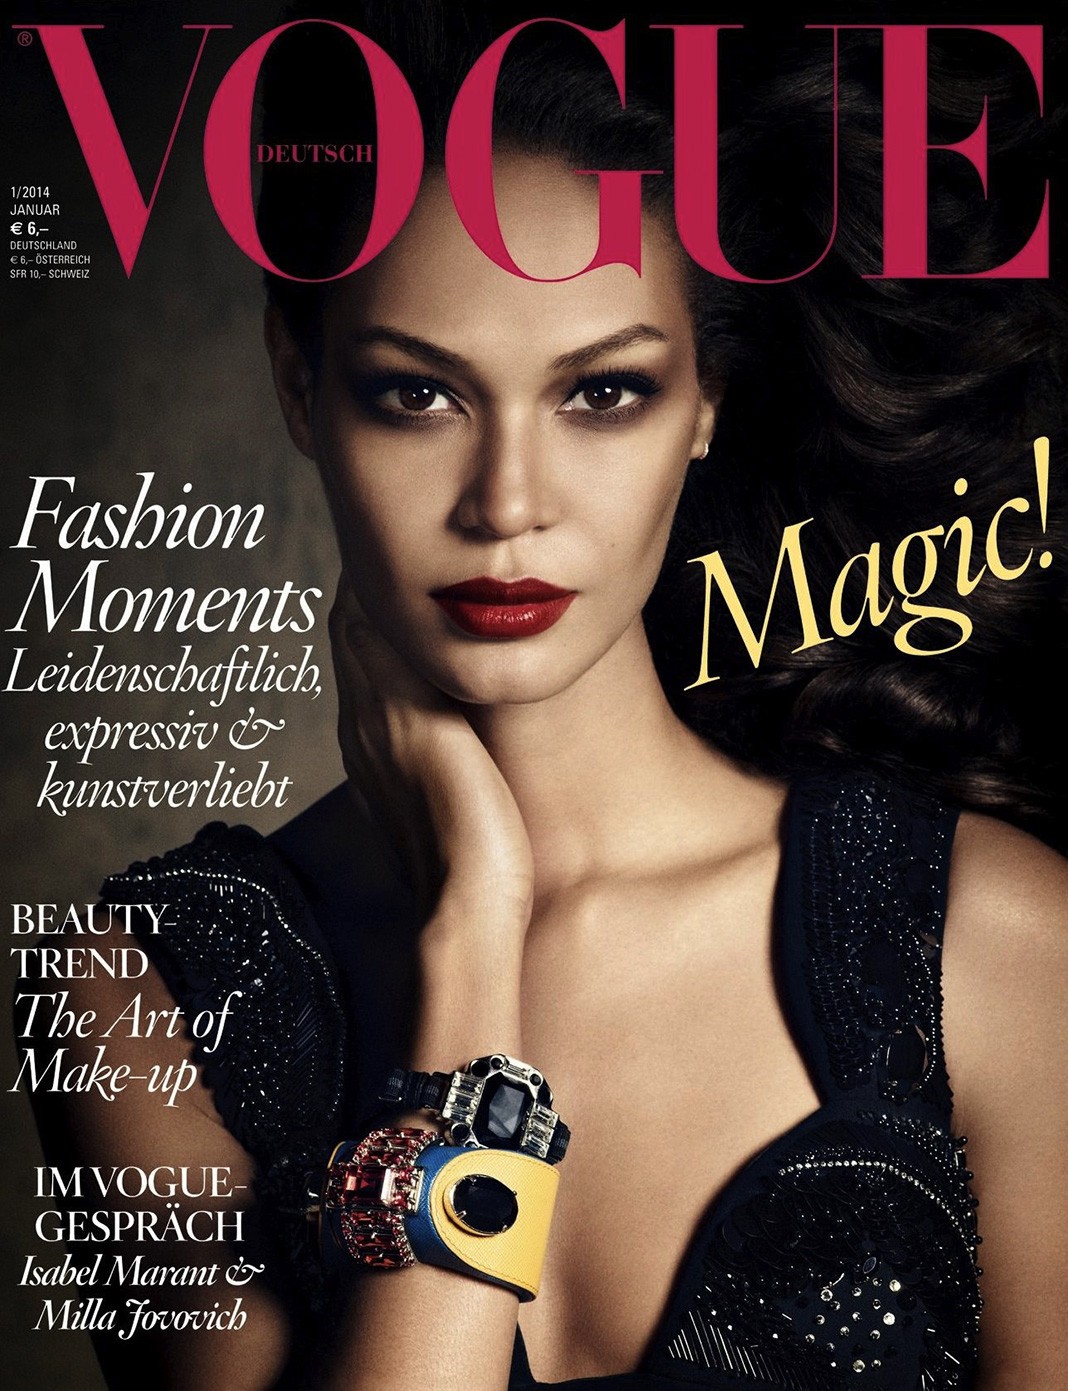 На обложке журнала Vogue Germany (фото Luigi & Daniele + Iango), январь 2014 г.